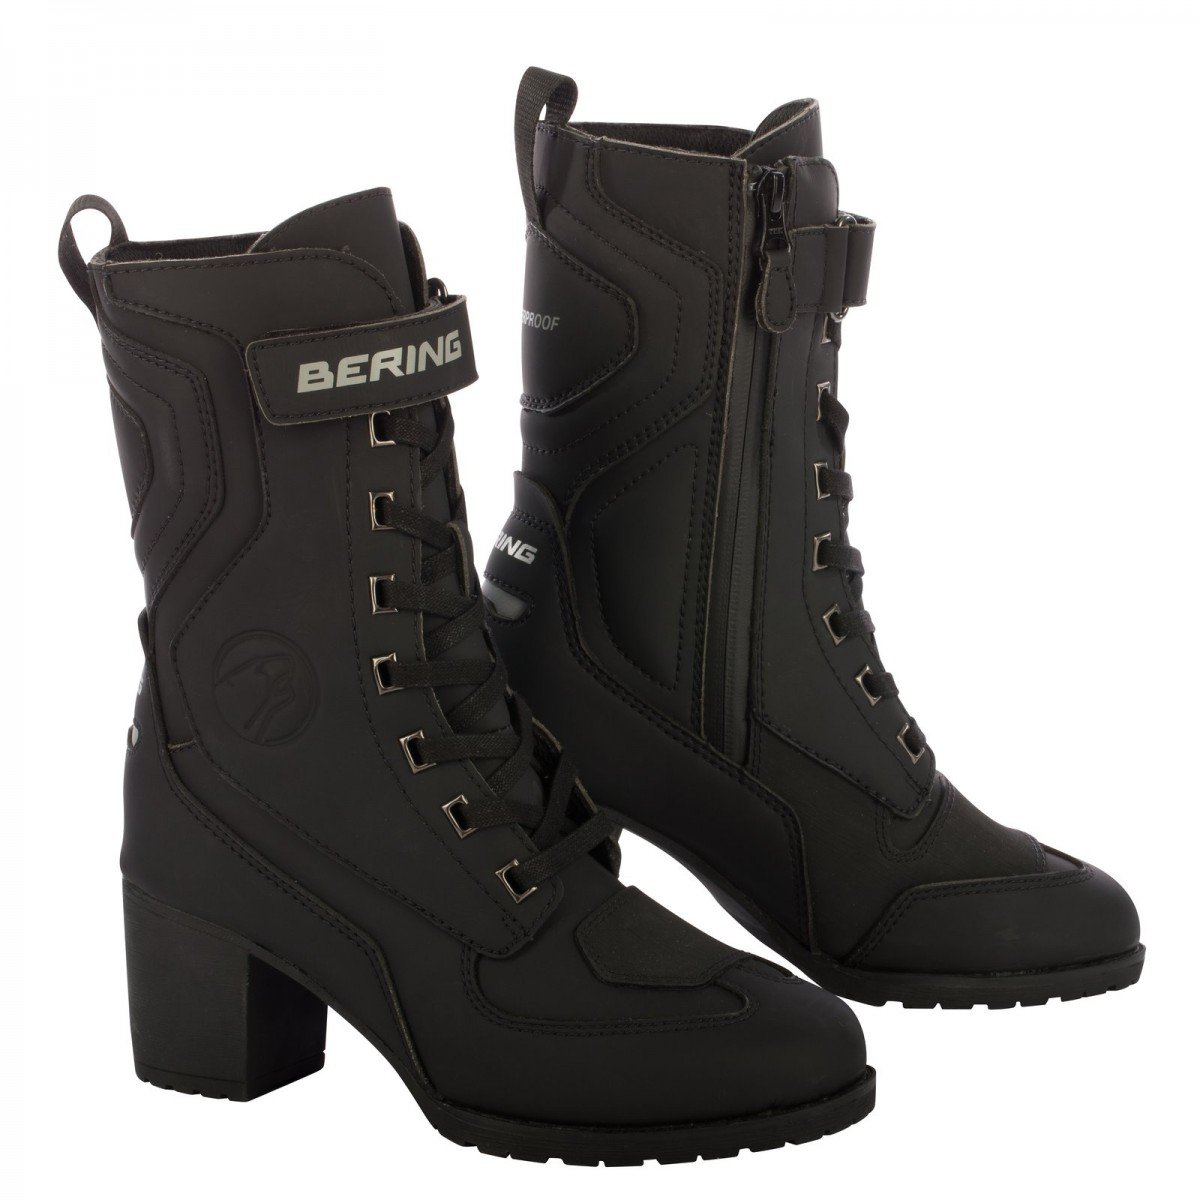 Image of Bering Lady Leonarda 2 Shoes Black Size 39 ID 3660815165294